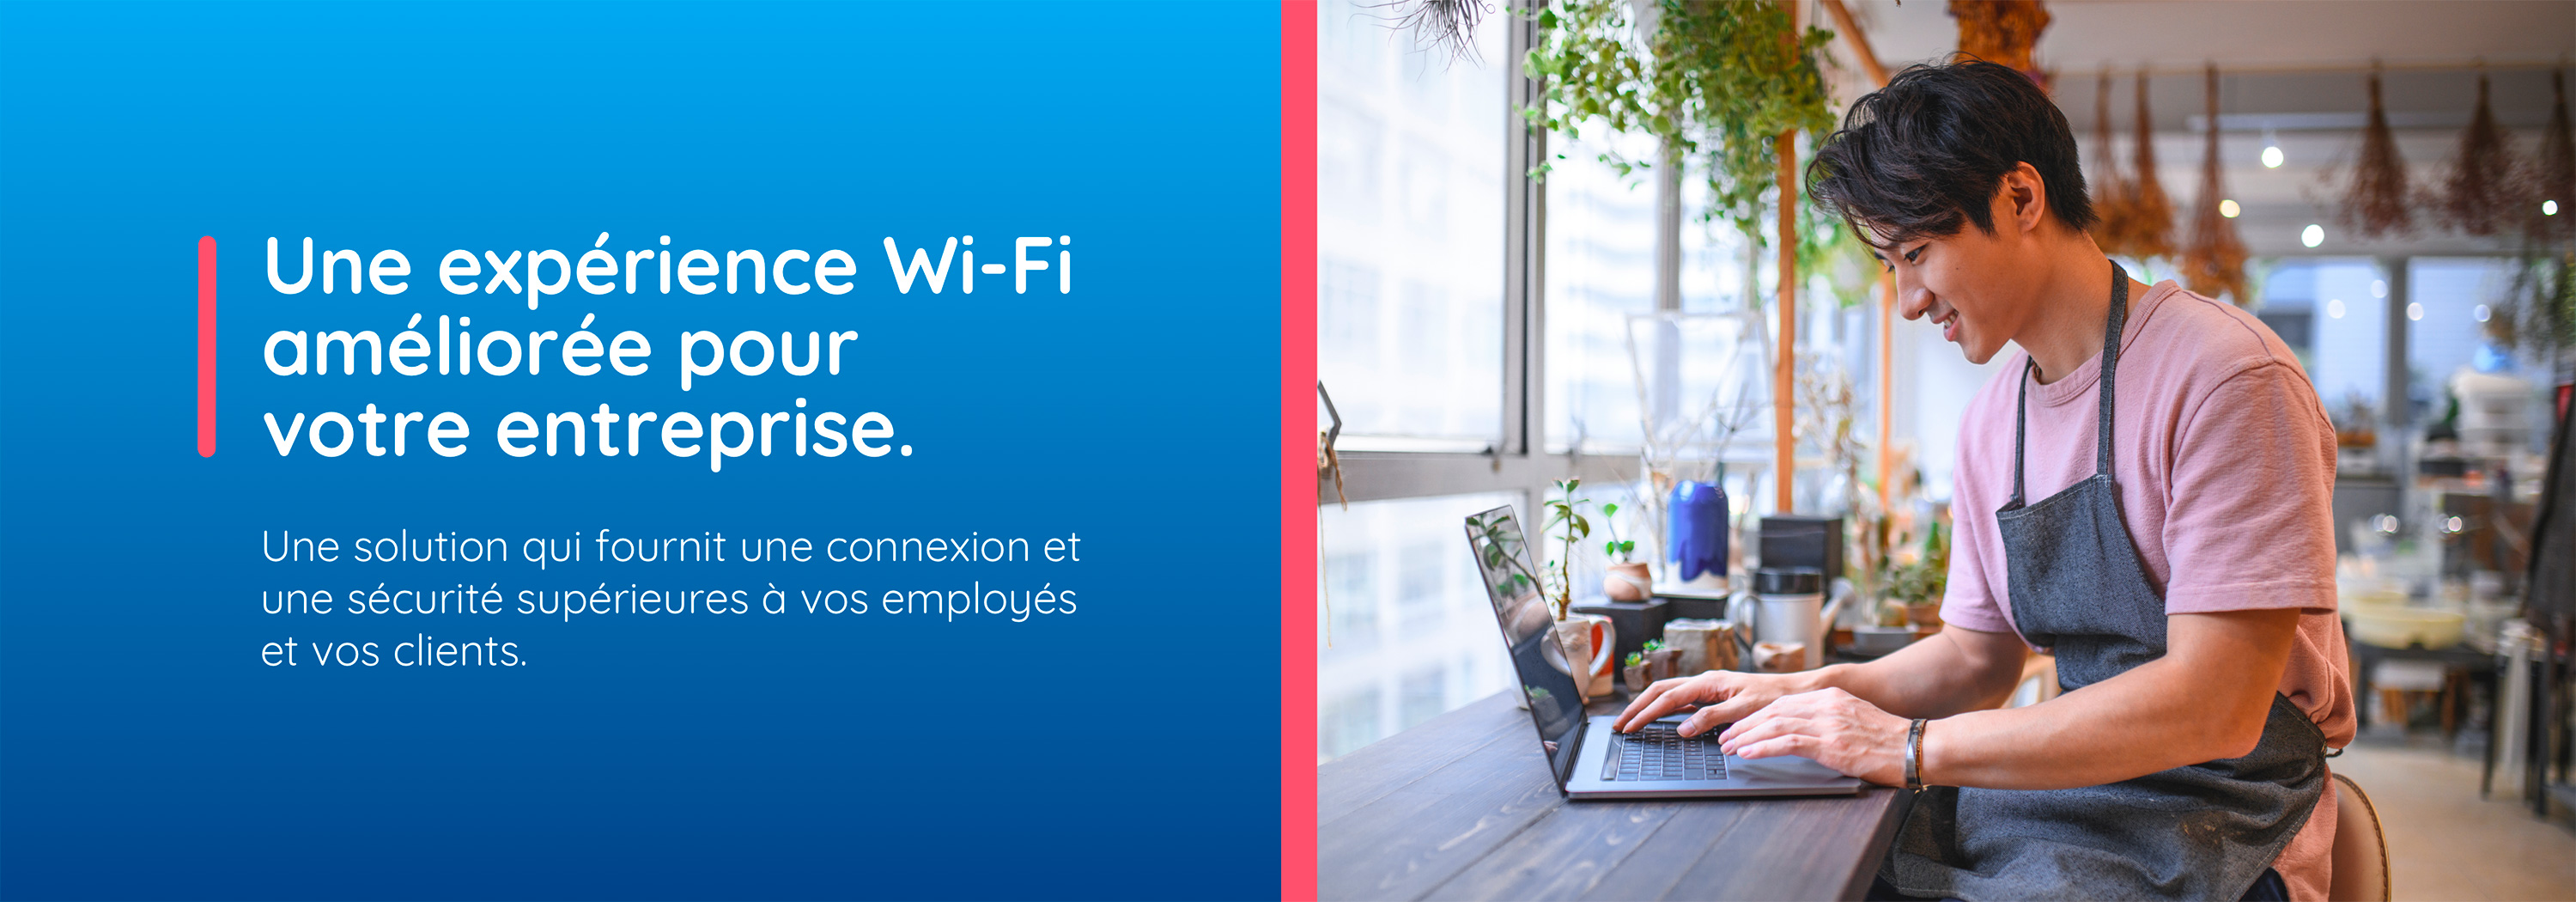 Une expérience Wi-Fi améliorée pour votre entreprise. Une solution qui fournit une connexion et une sécurité supérieures à vos employés et vos clients.